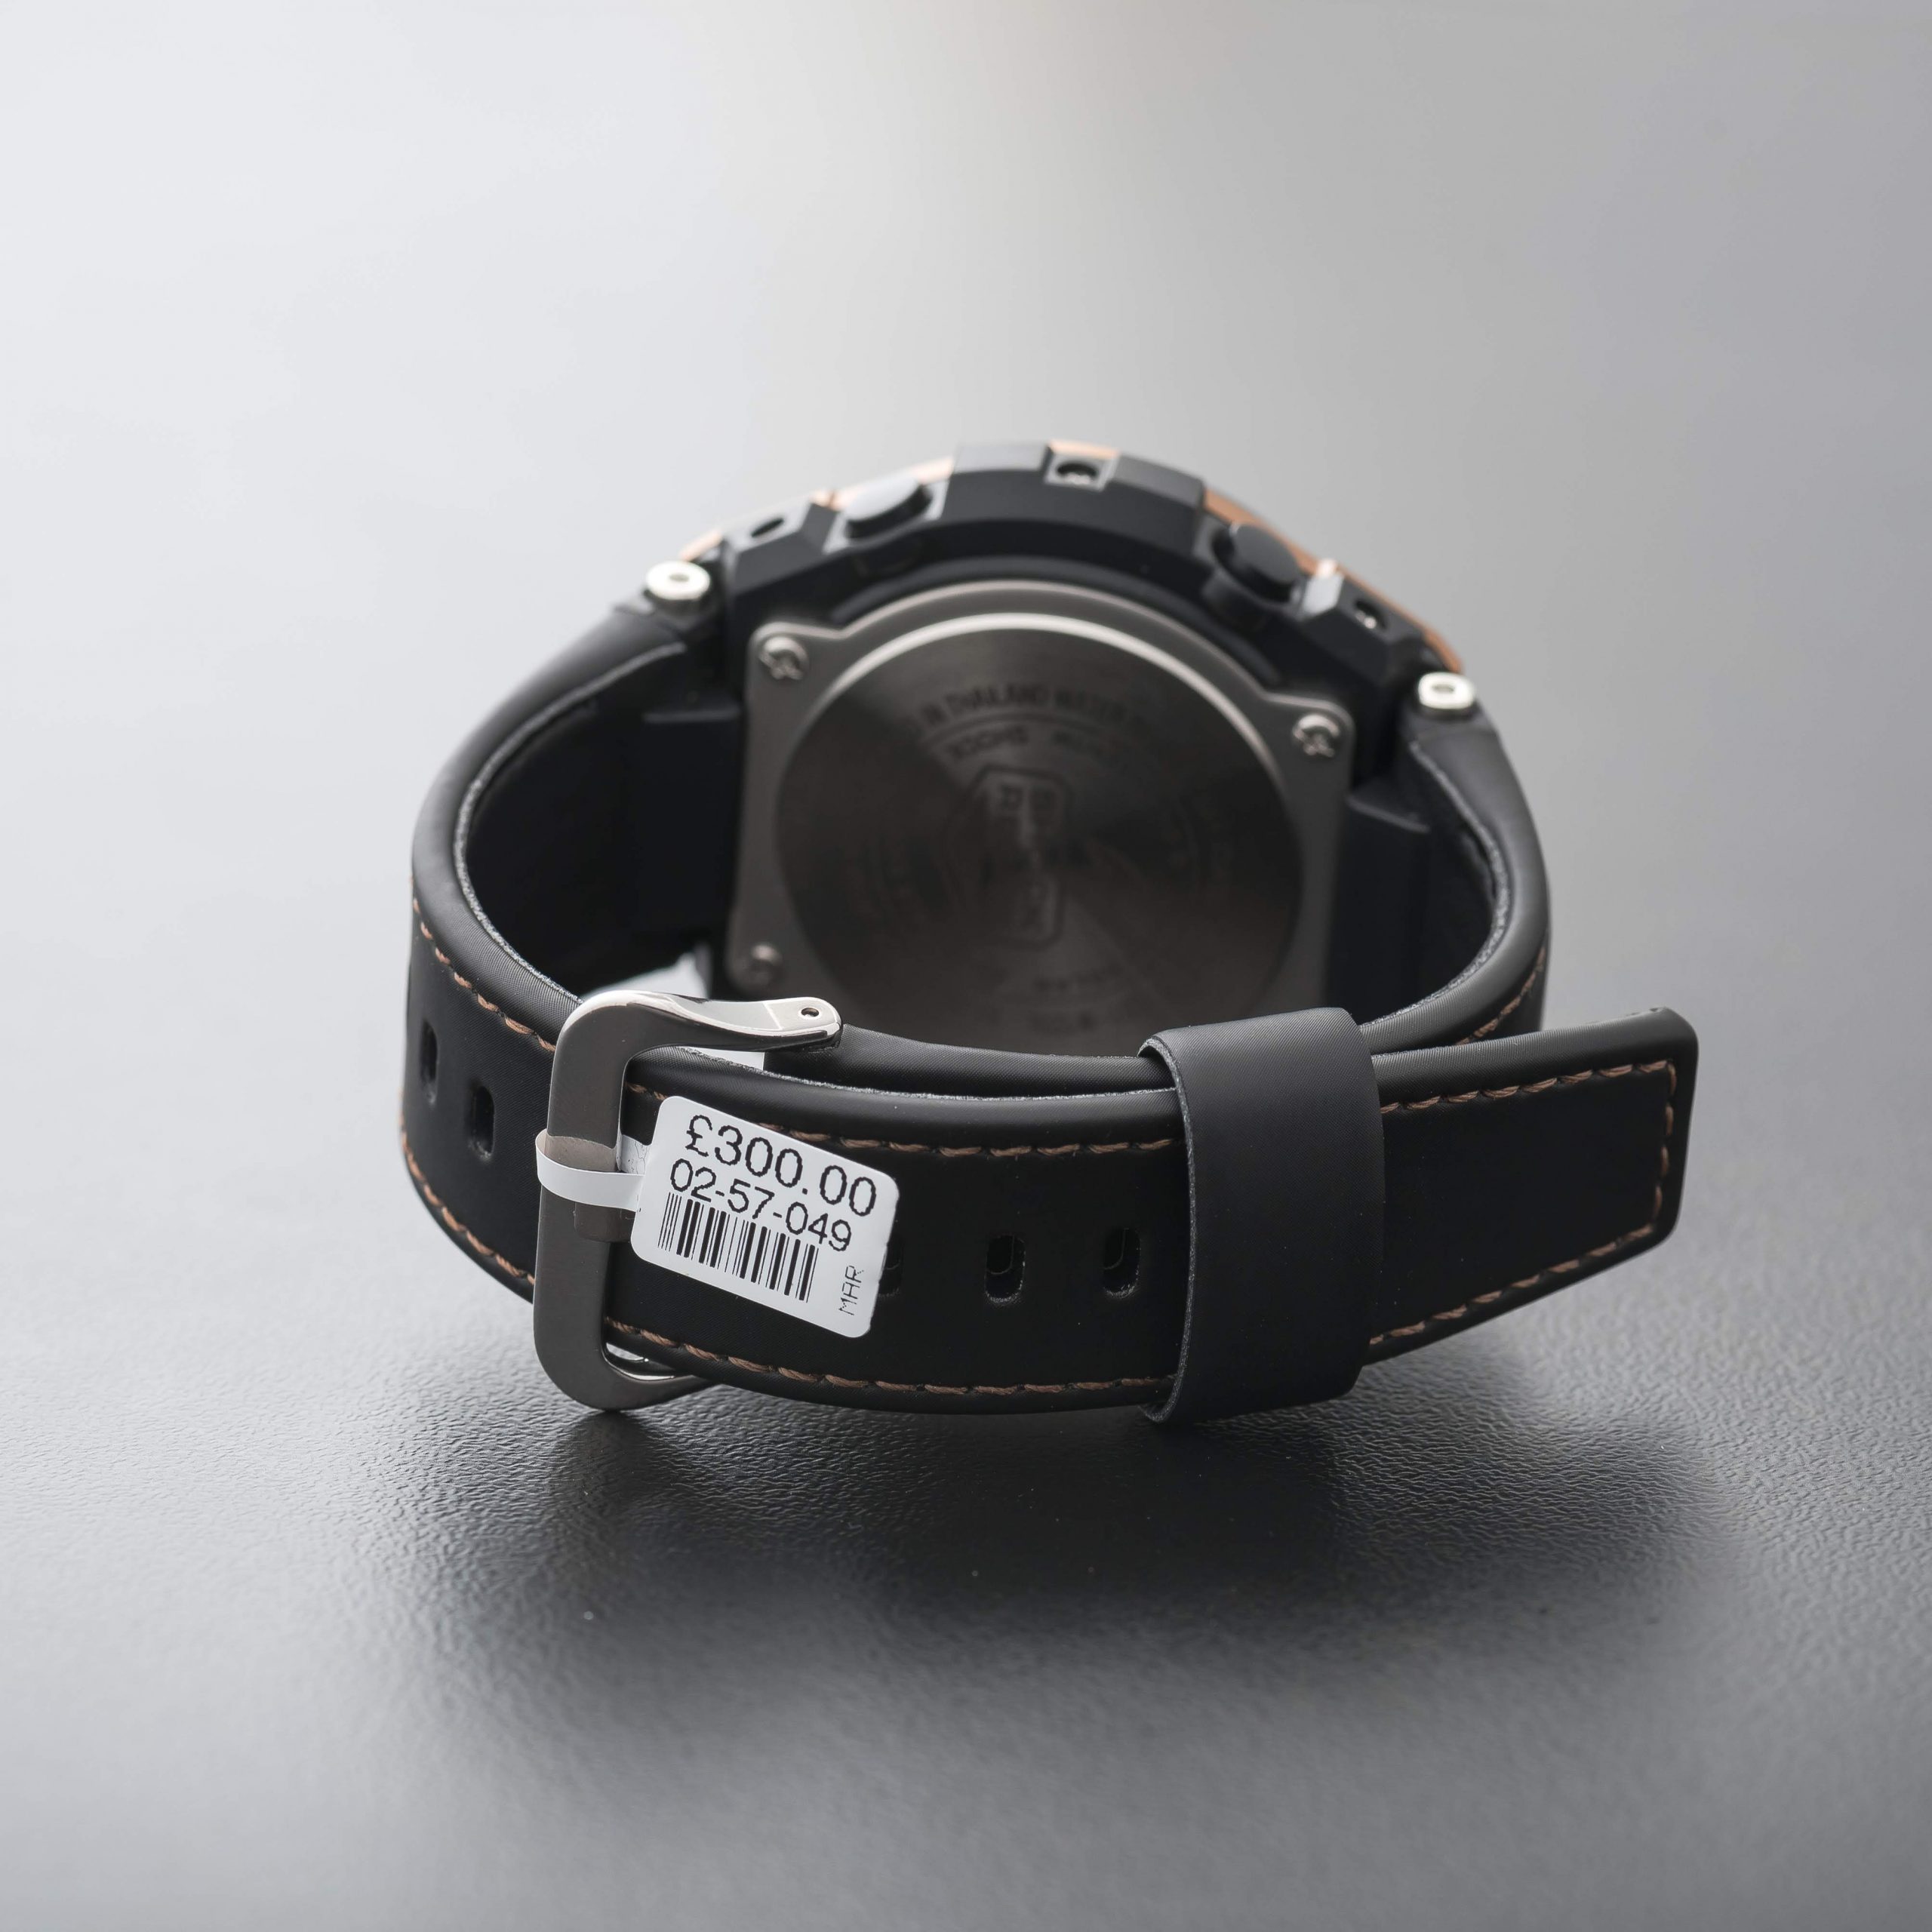 Casio G-Steel Steel Solar Radio Controlled Leather Strap Watch GST-W120l-1AER